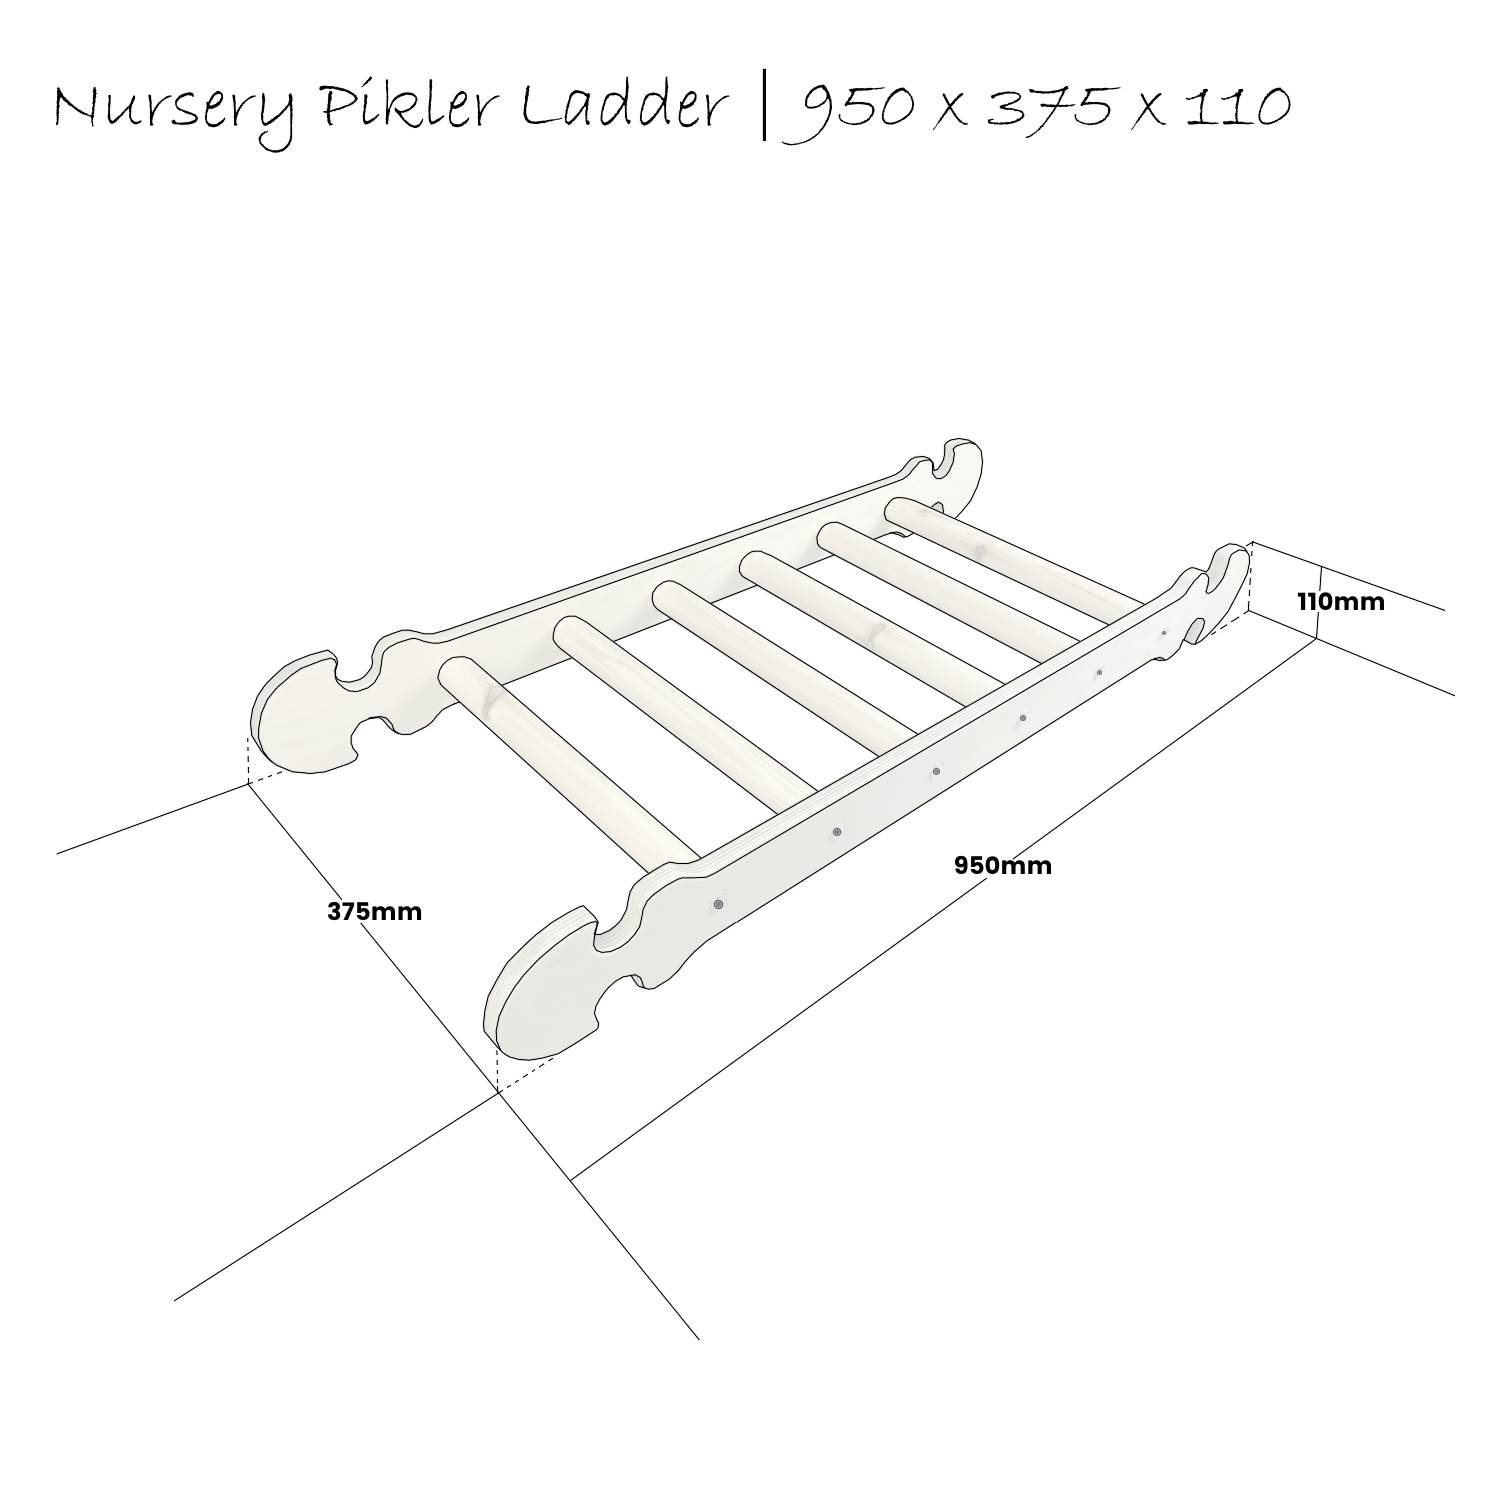 Nursery Pikler ladder Schematic 950x375x110